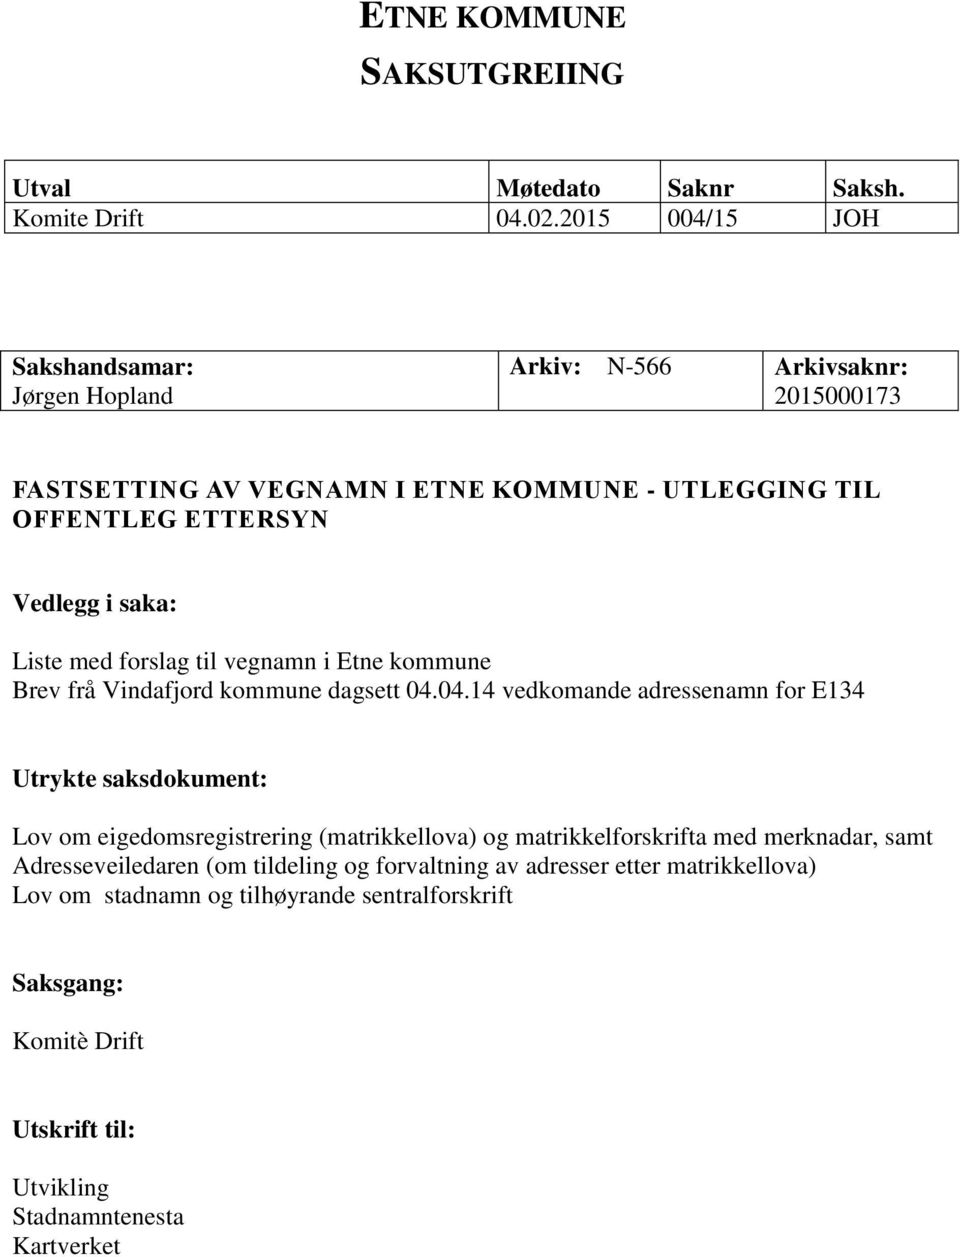 saka: Liste med forslag til vegnamn i Etne kommune Brev frå Vindafjord kommune dagsett 04.